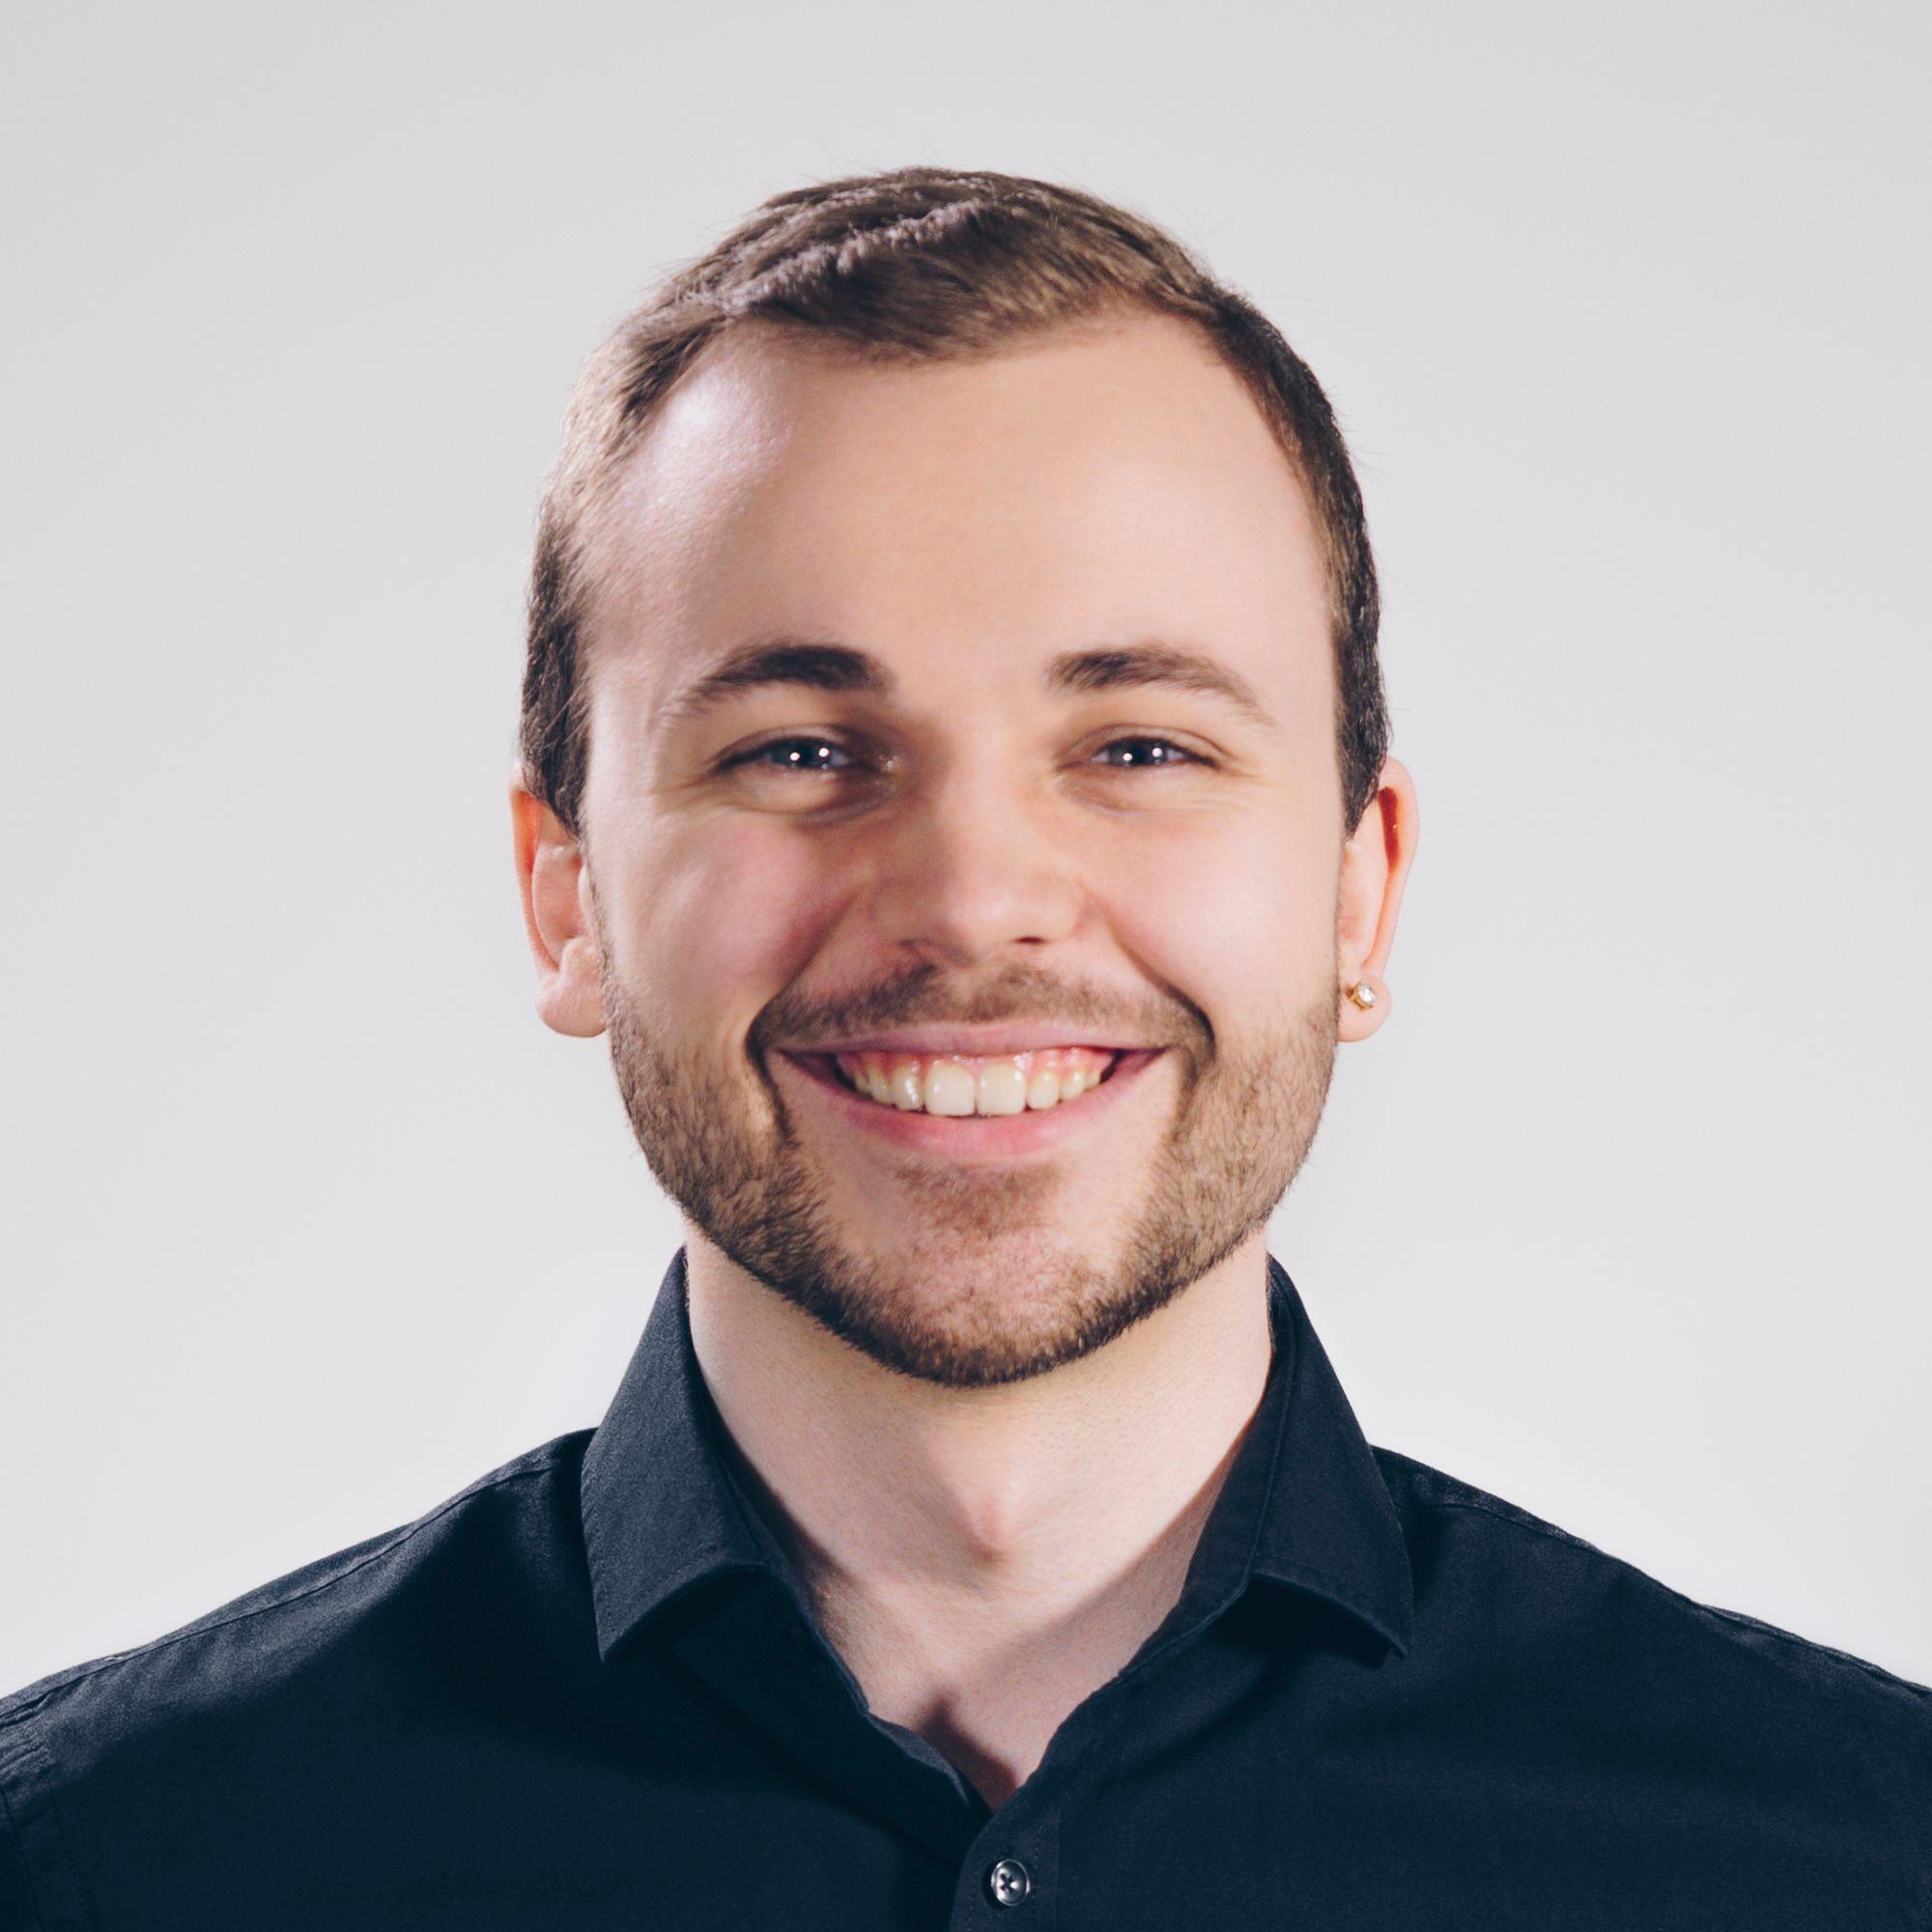 Profilbild von Nils Kümin, Founder & CEO